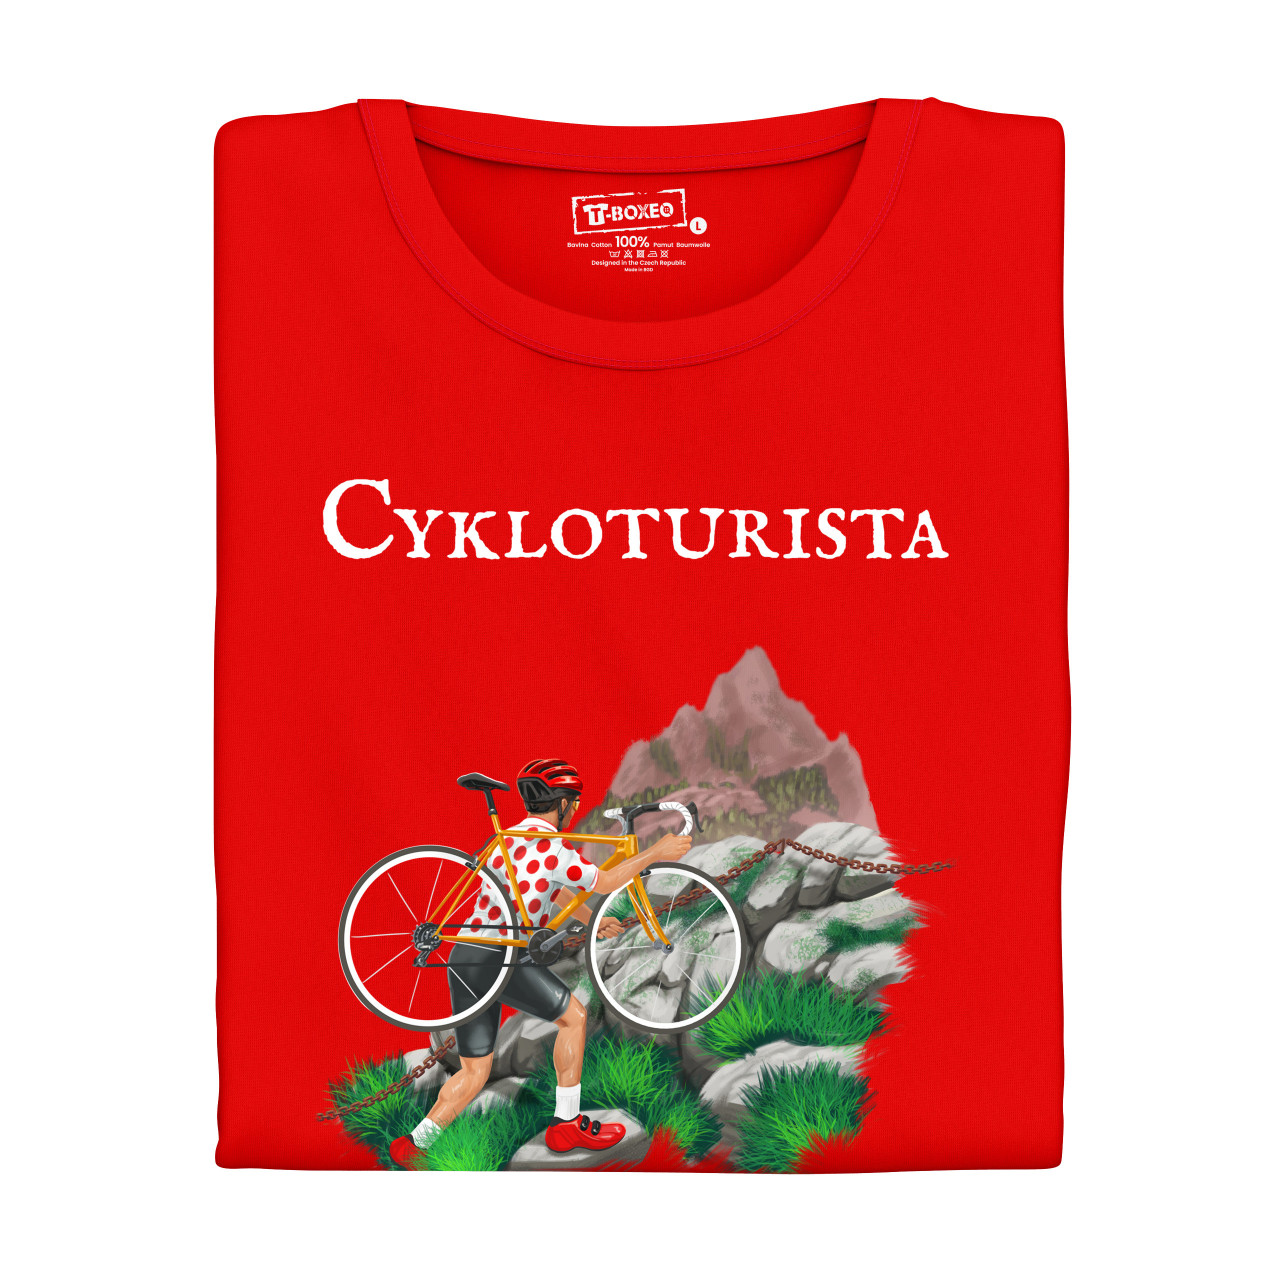 Pánské tričko s potiskem "Cykloturista" 